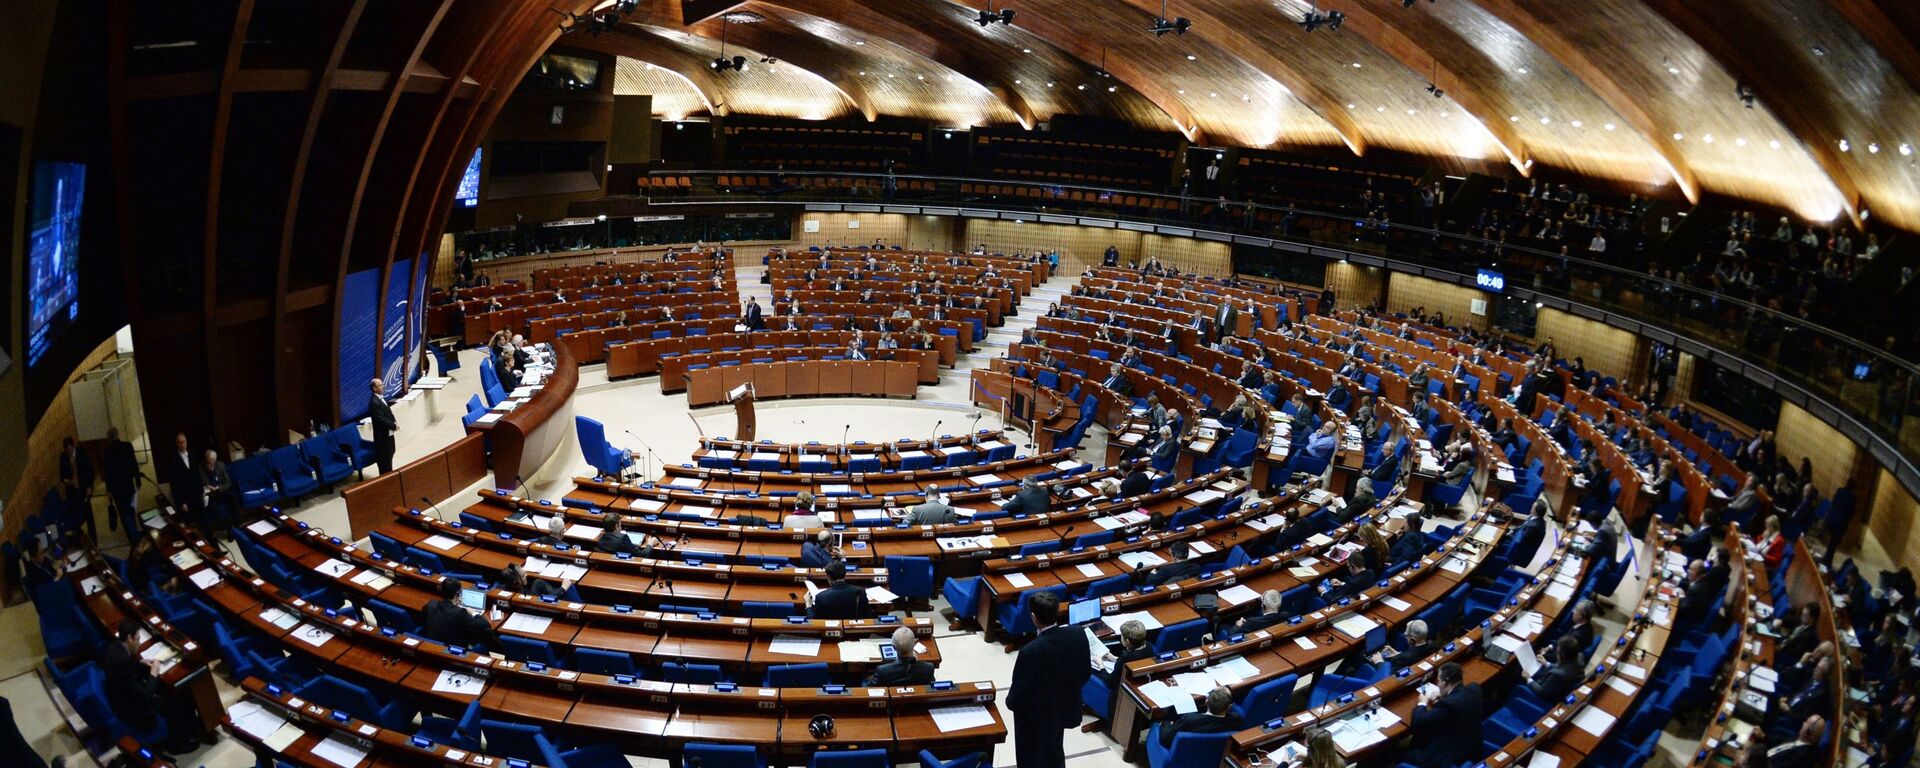 Пленарное заседание зимней сессии Парламентской ассамблеи Совета Европы - Sputnik Արմենիա, 1920, 21.06.2021